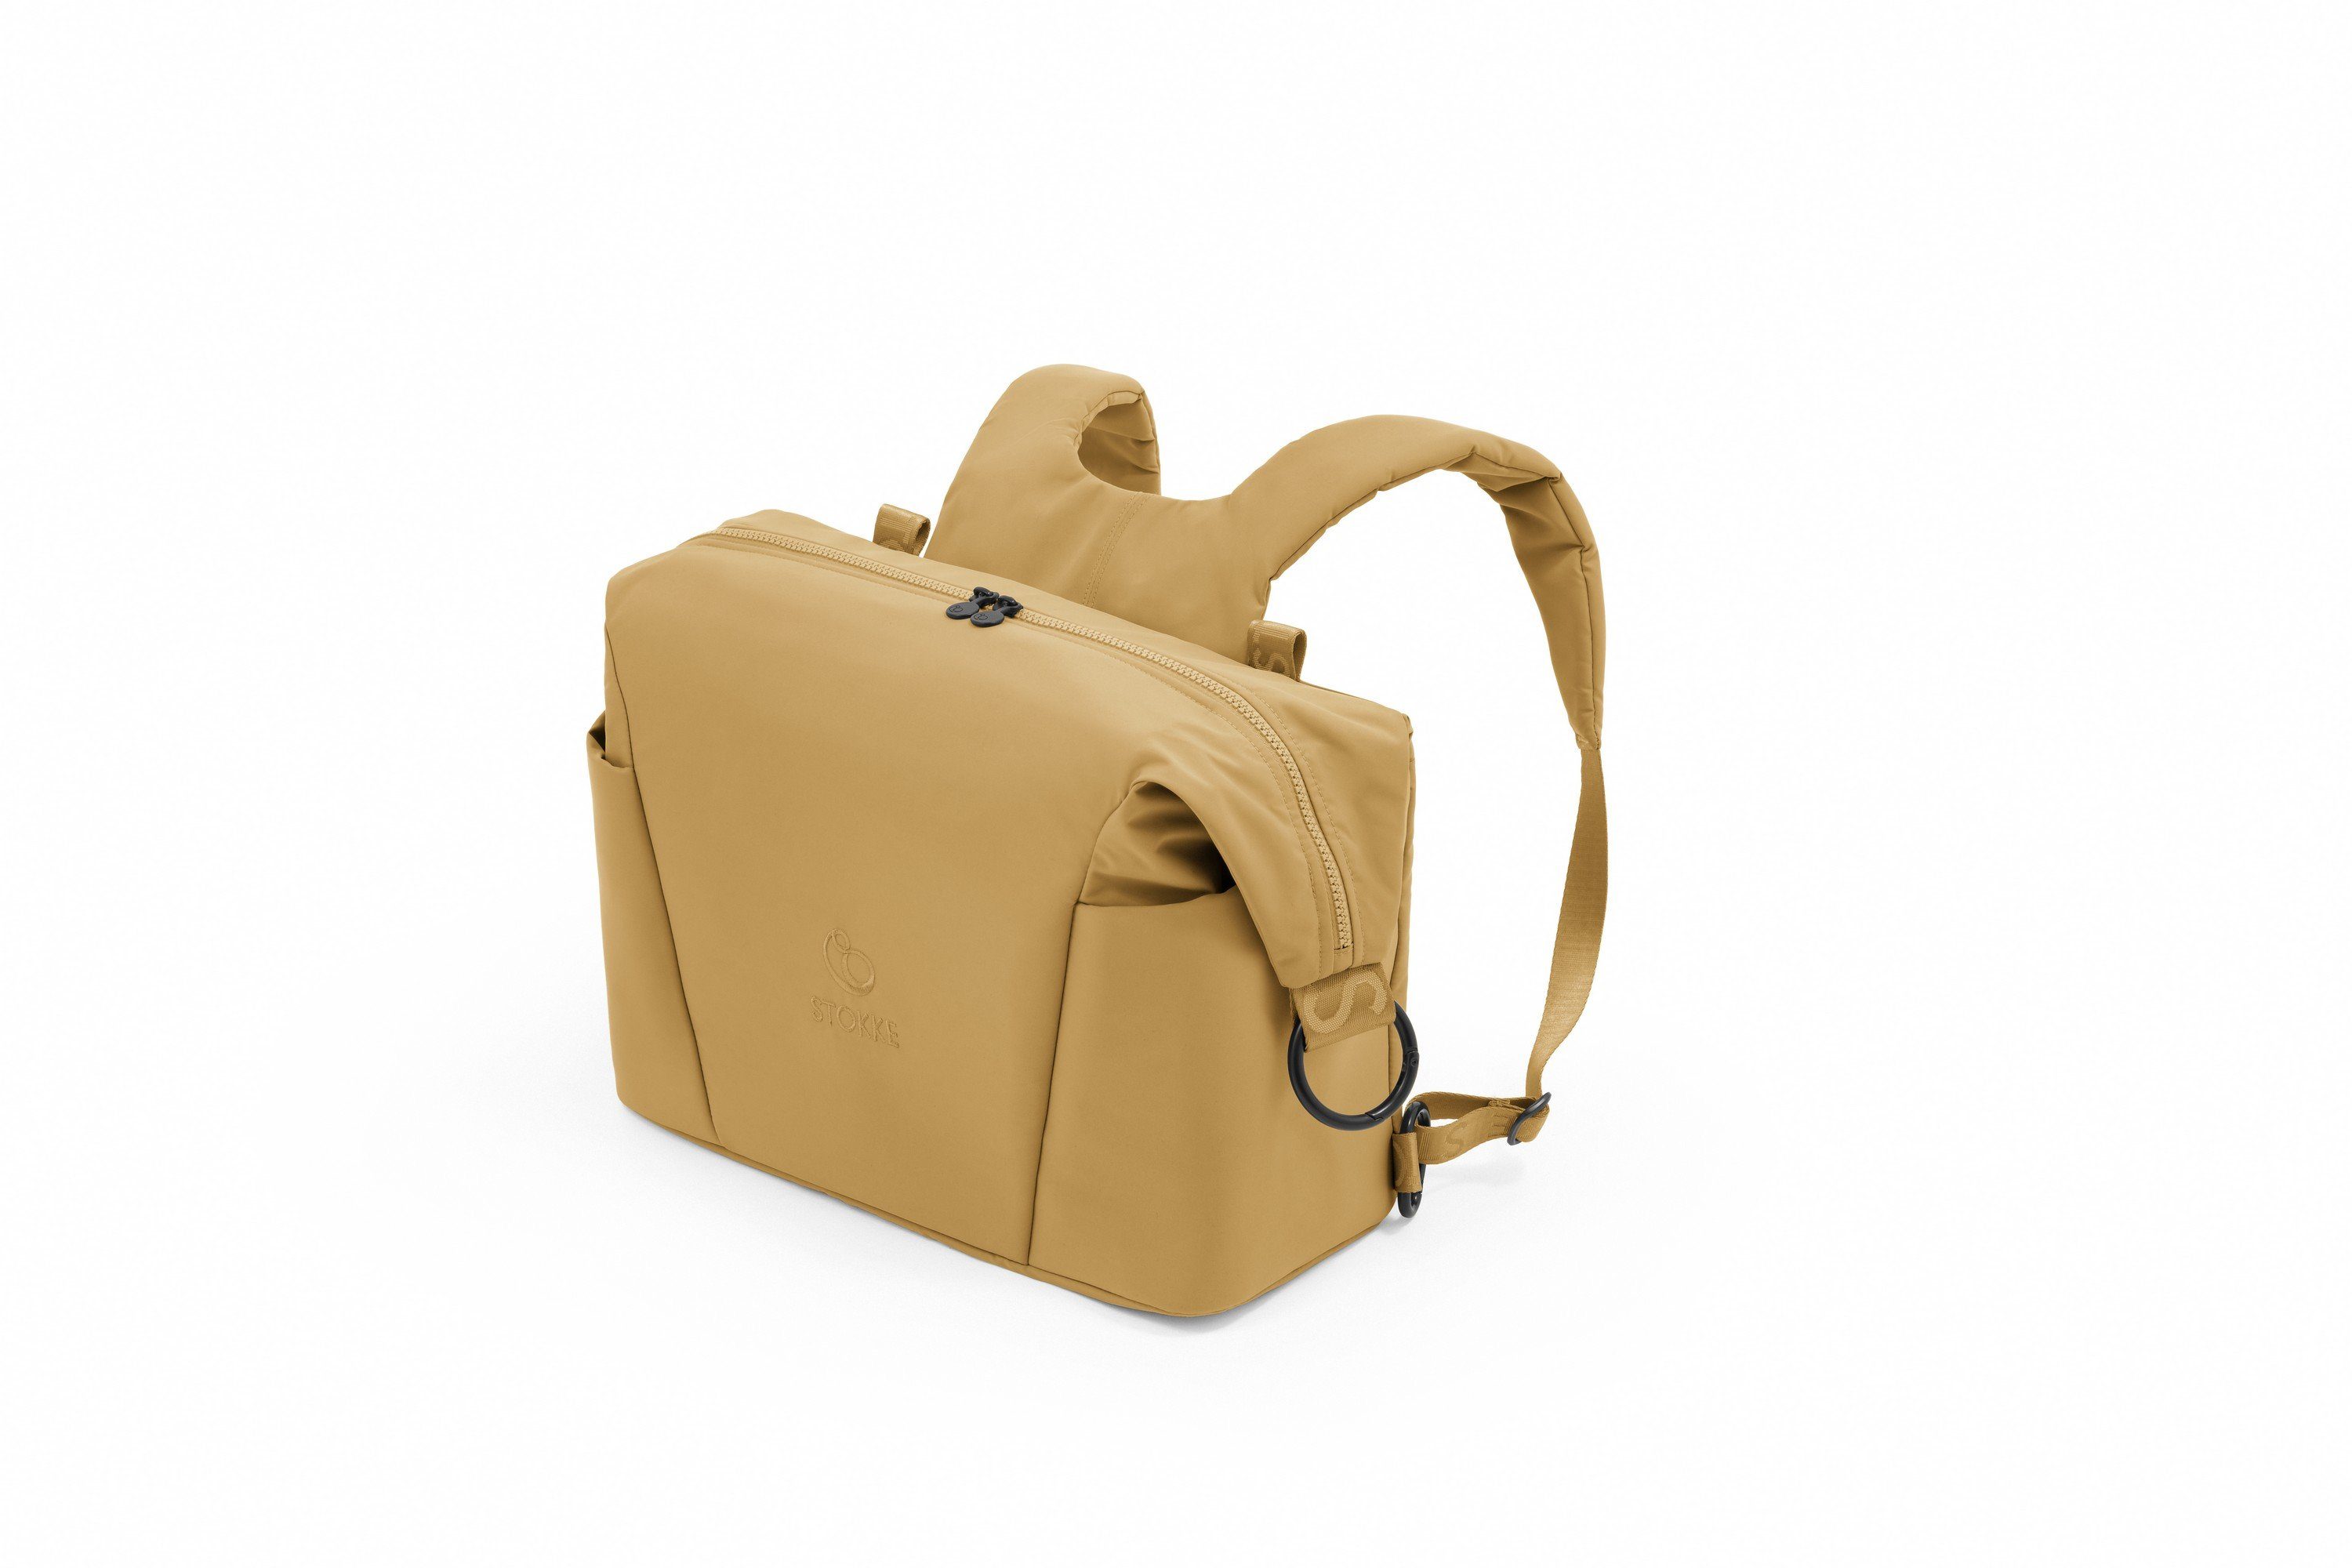 Stokke Wickeltasche Tasche mit zwei Trageoptionen - auch passend für den Xplory X